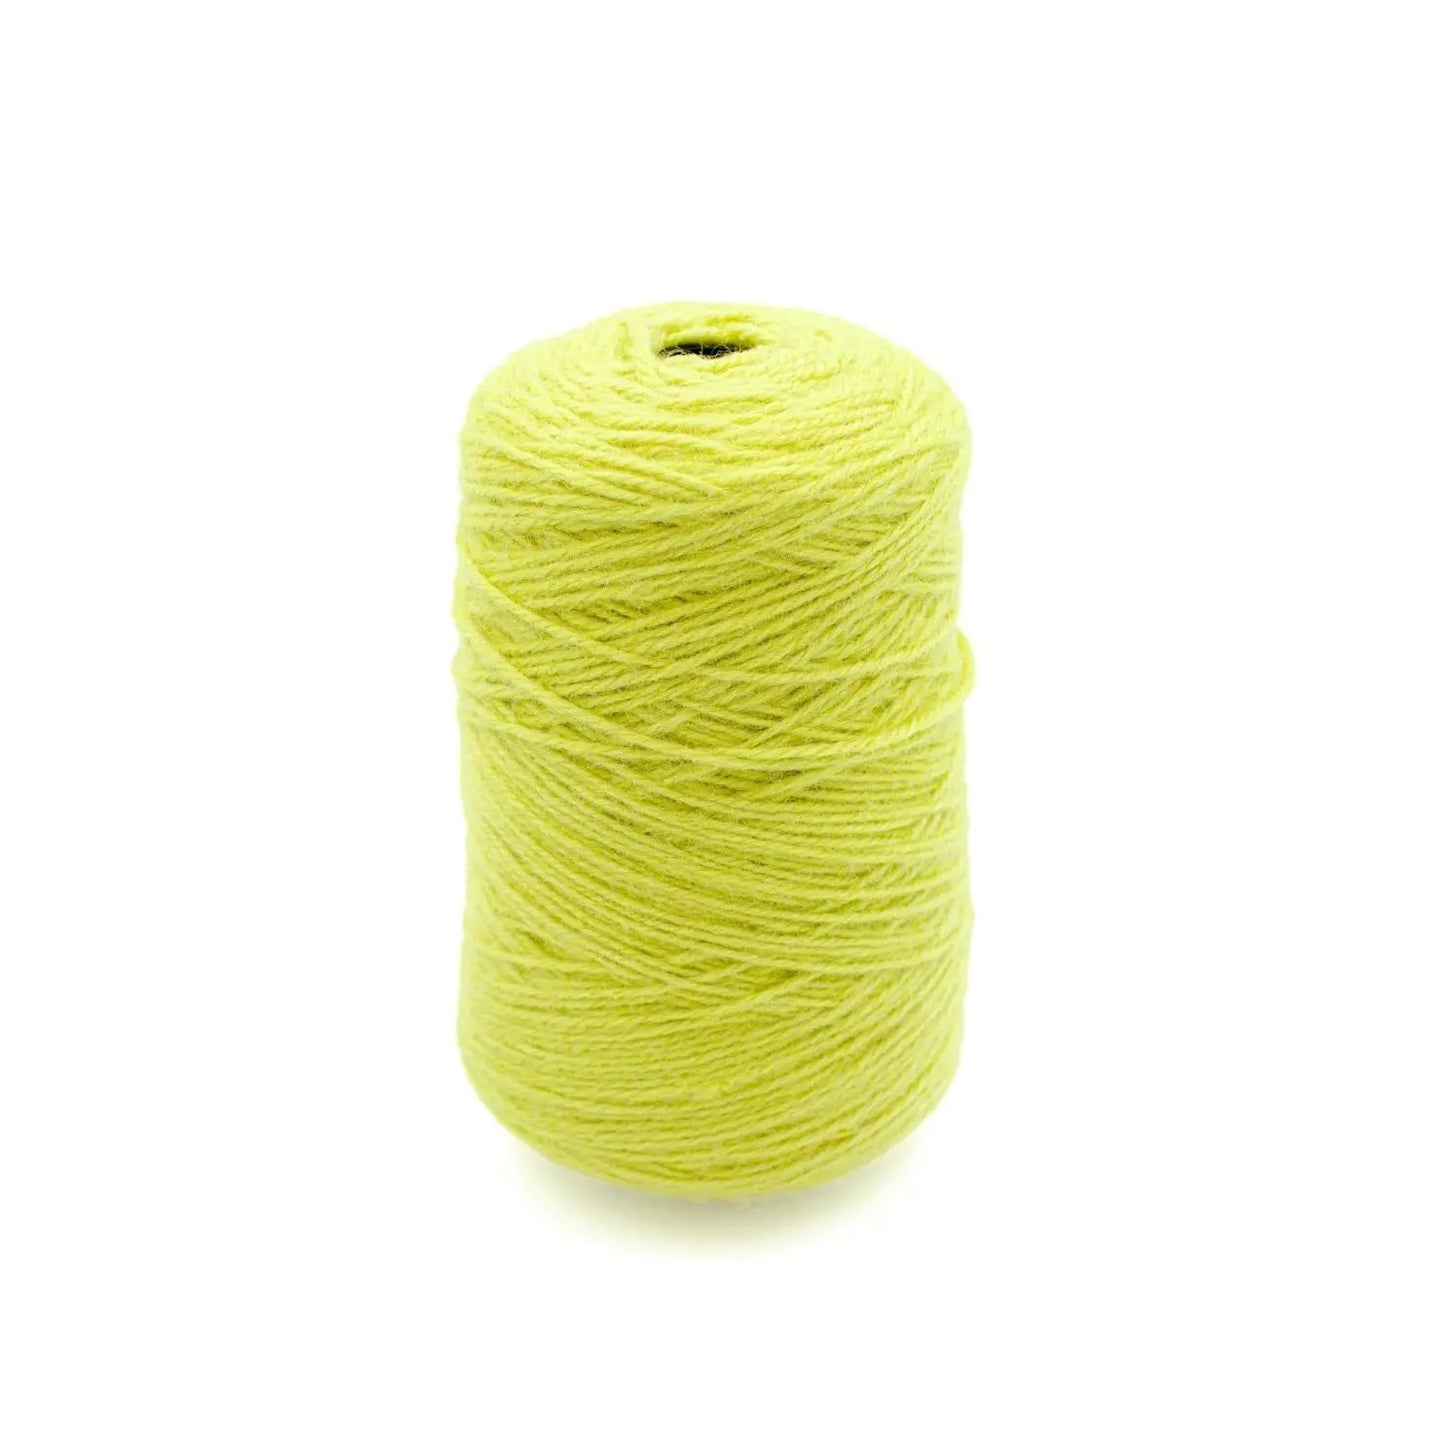 Lime Yellow Green Wool Yarn